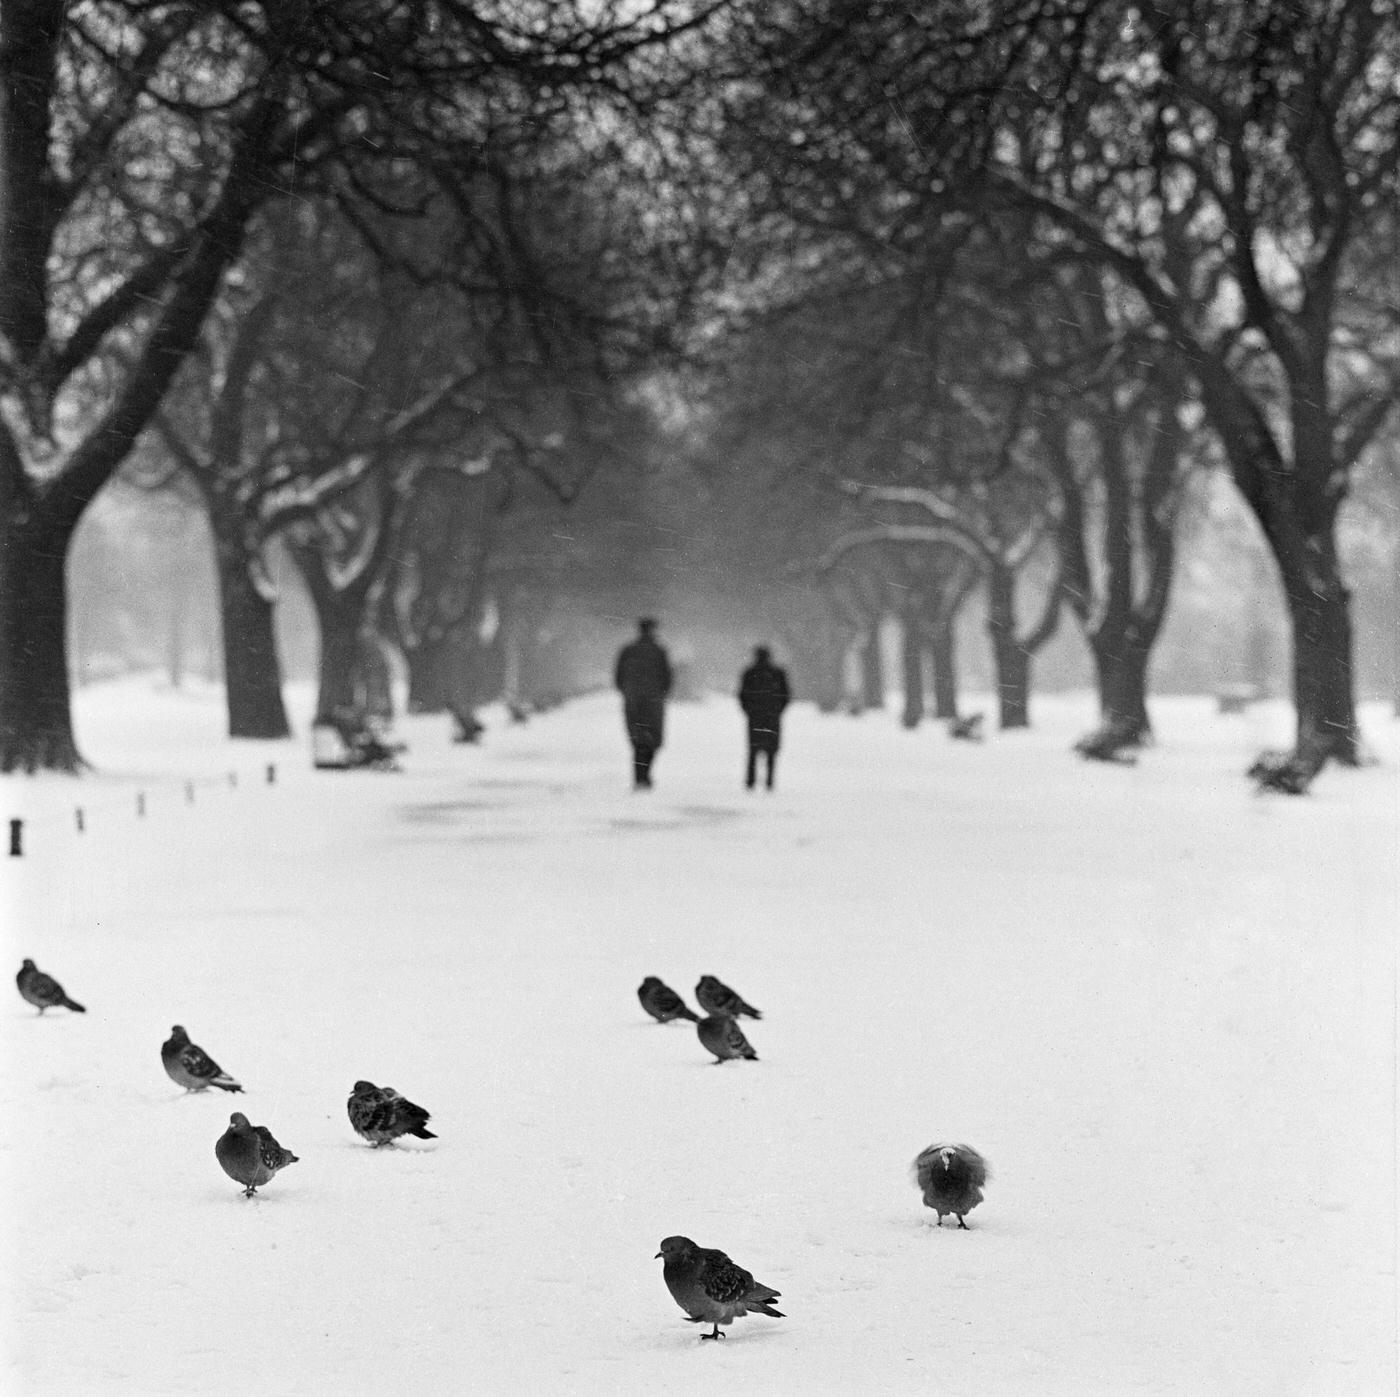 Pigeons on a snowy path, Regent's Park, London, 1960